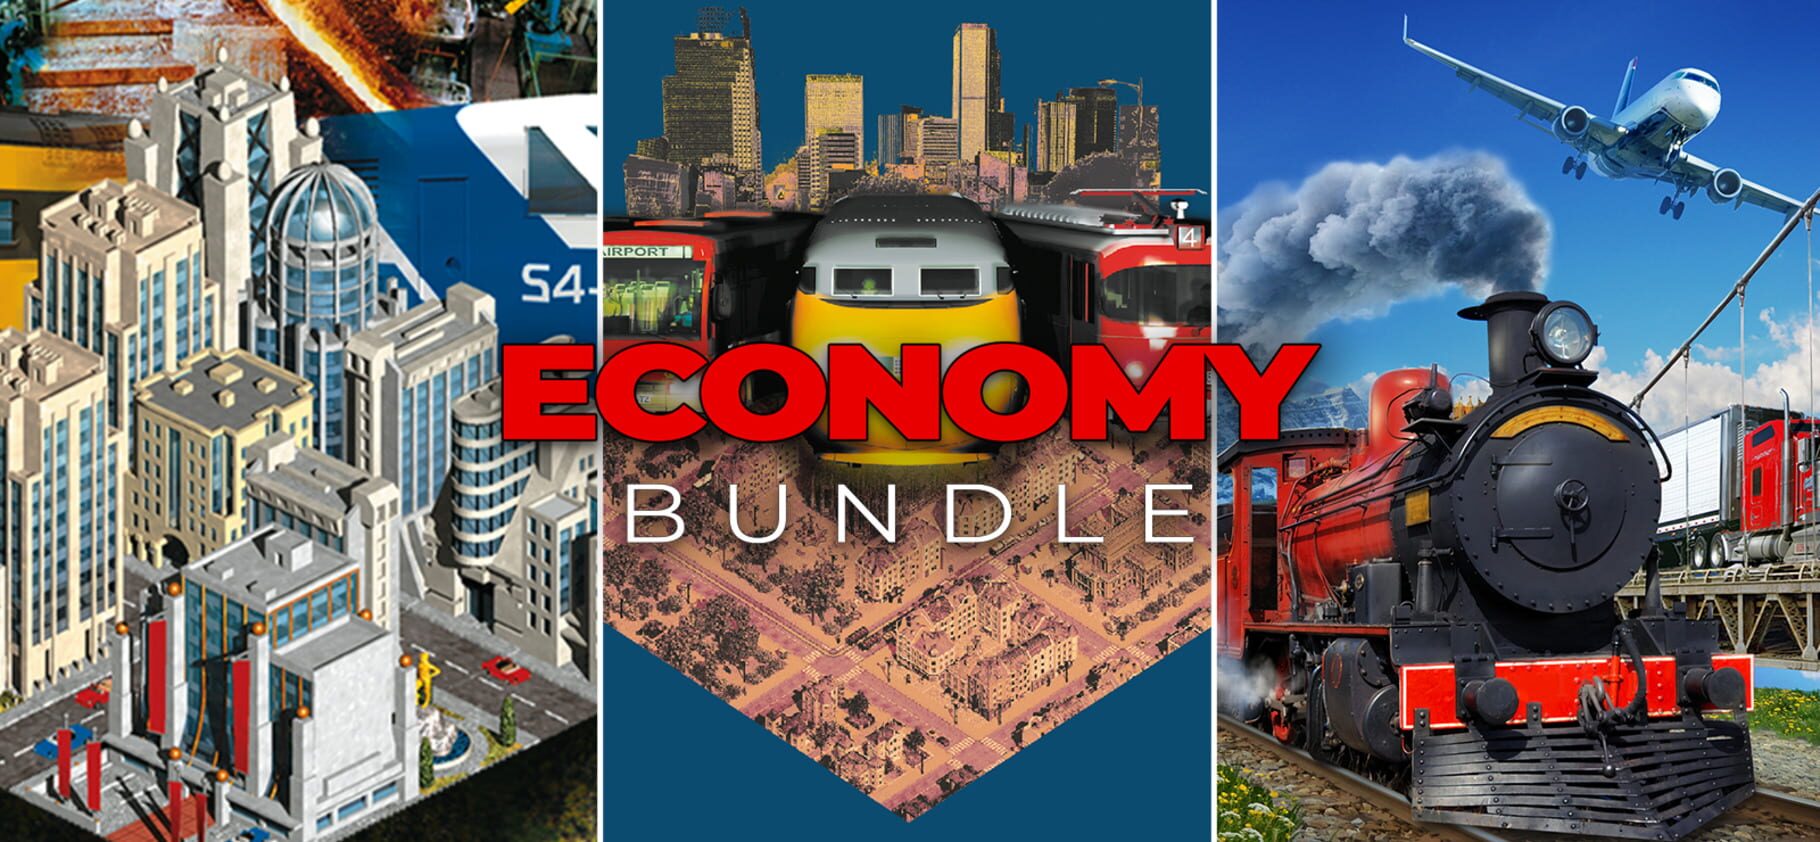 Economy Bundle Image